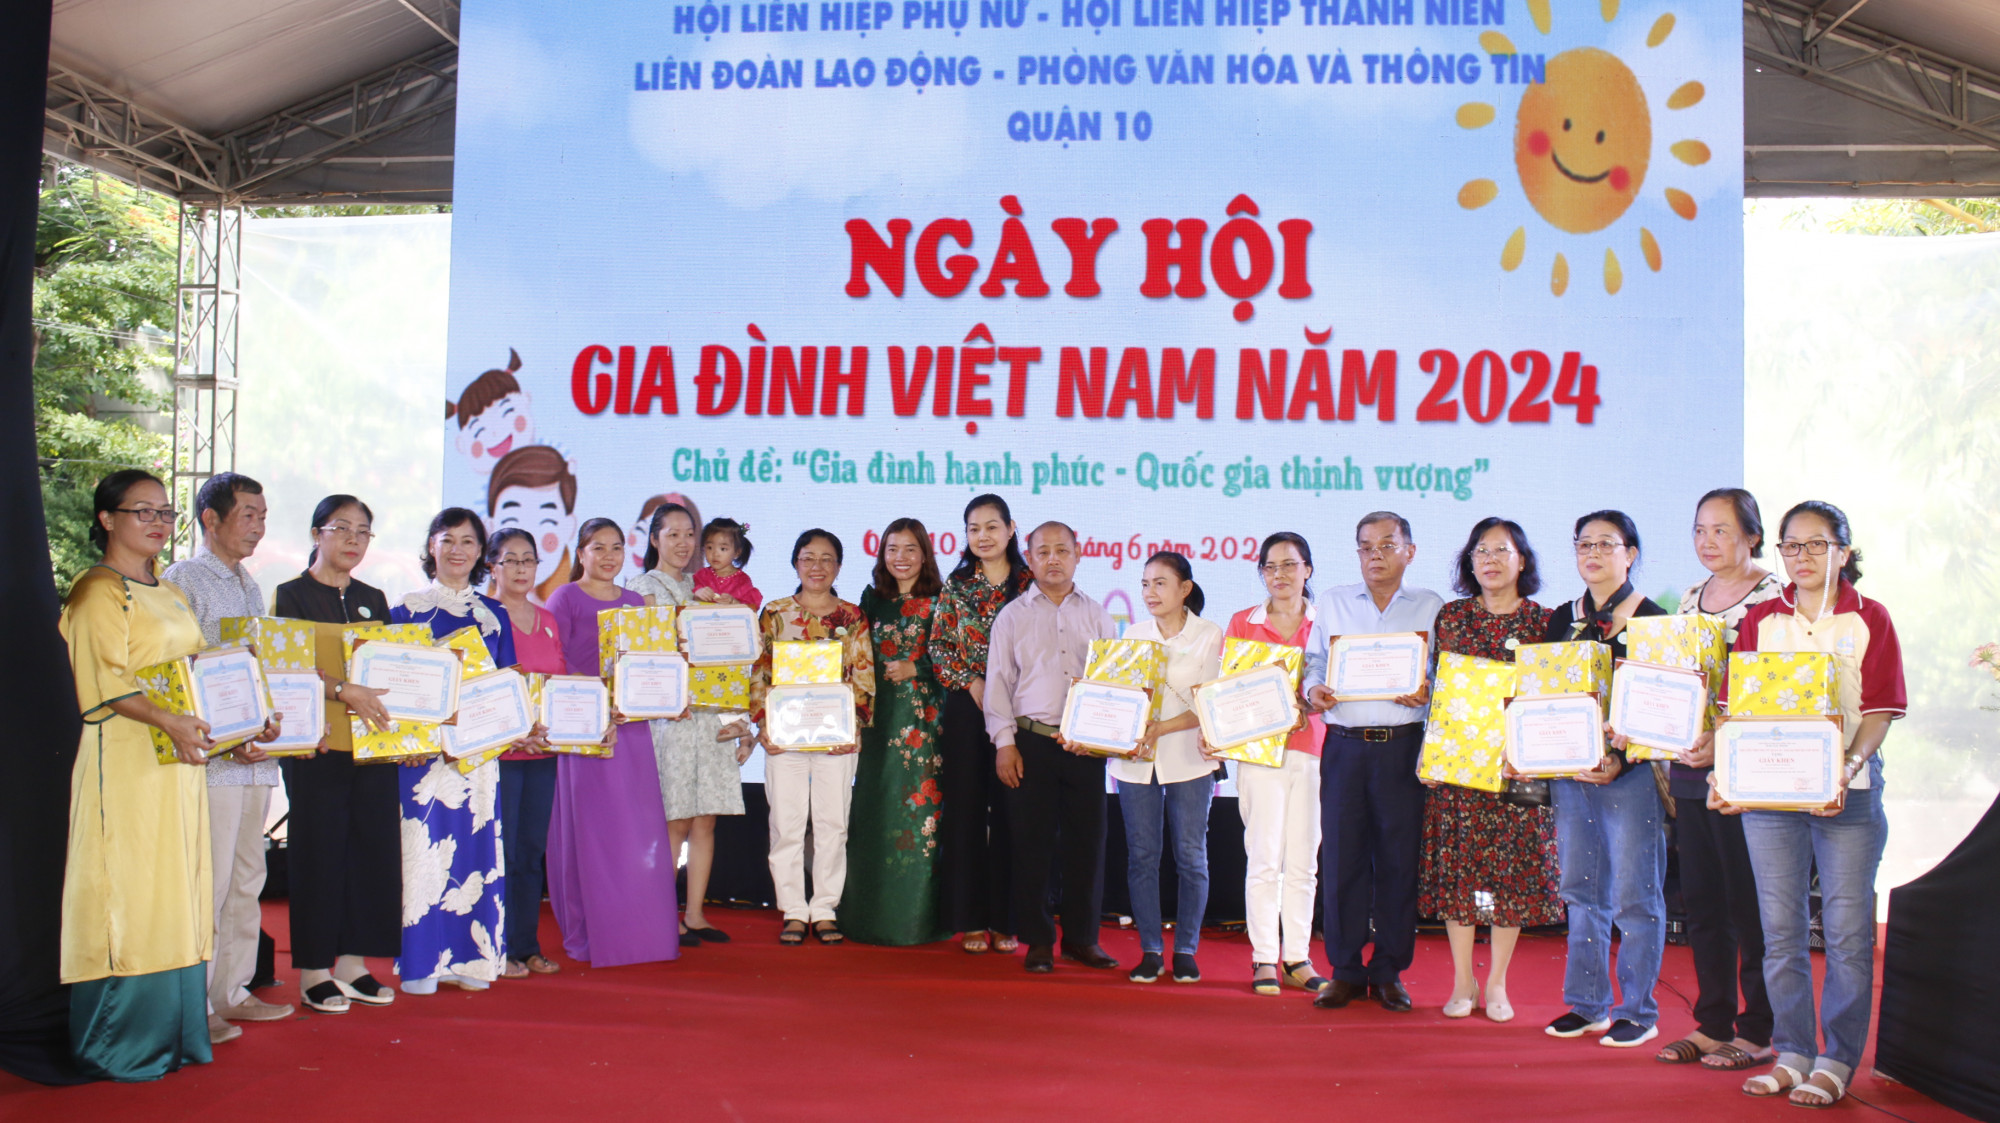 Bà Lâm Thị Ngọc Hoa - Phó chủ tịch thường trực Hội LHPN TPHCM và bà Ngô Thị Quế Băng  - Phó chủ tịch Hội LHPN quận 10 trao quà và giấy khen cho gương gia đình văn hóa, hạnh phúc tiêu biểu năm 2024.